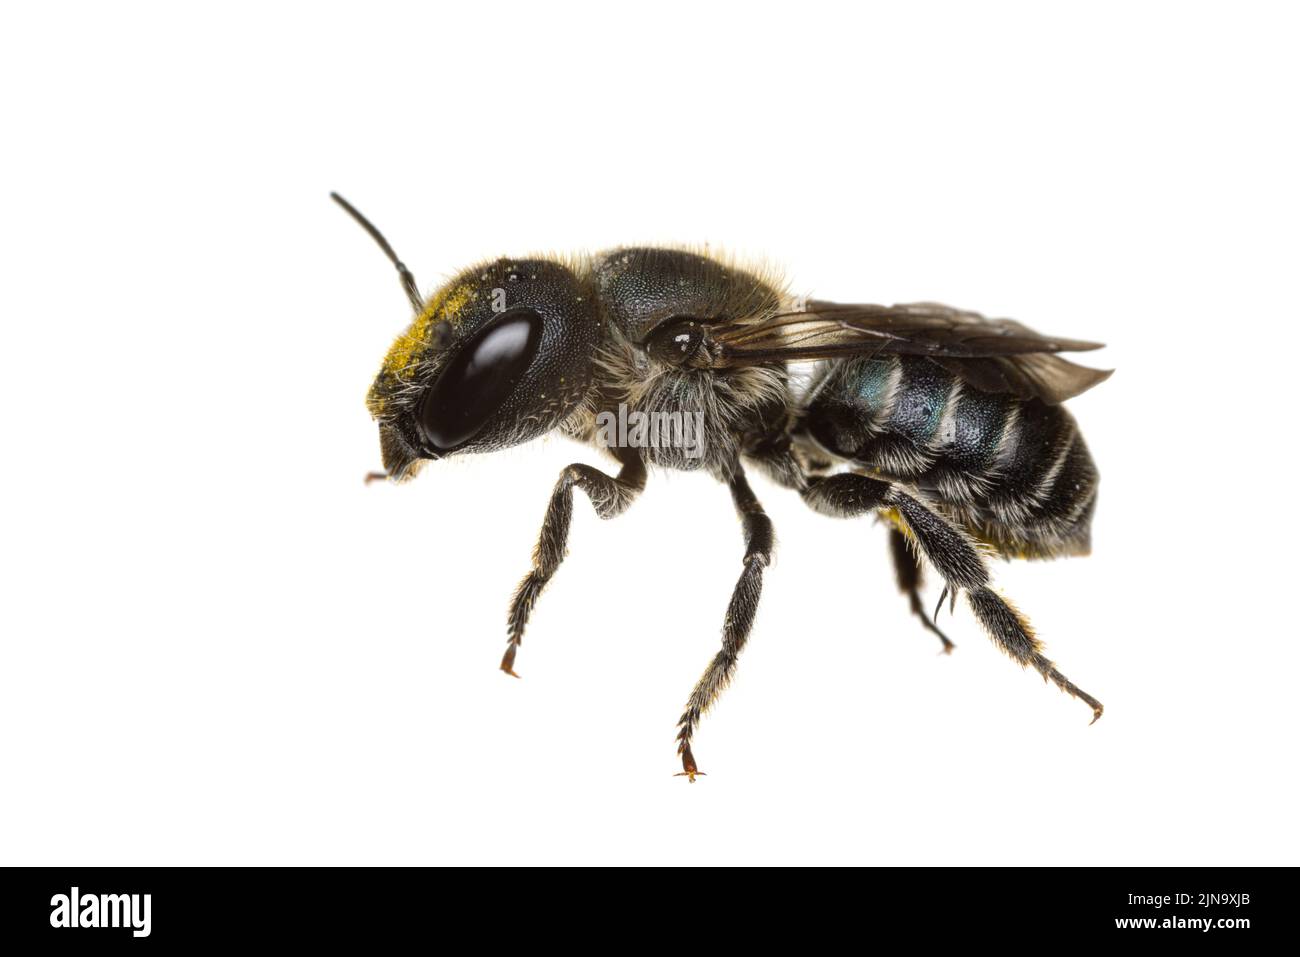 Insectes d'europe - abeilles: Vue latérale de la femelle Osmia caerulescens mason bleu (german Stahlblaue Mauerbiene) isolé sur fond blanc Banque D'Images